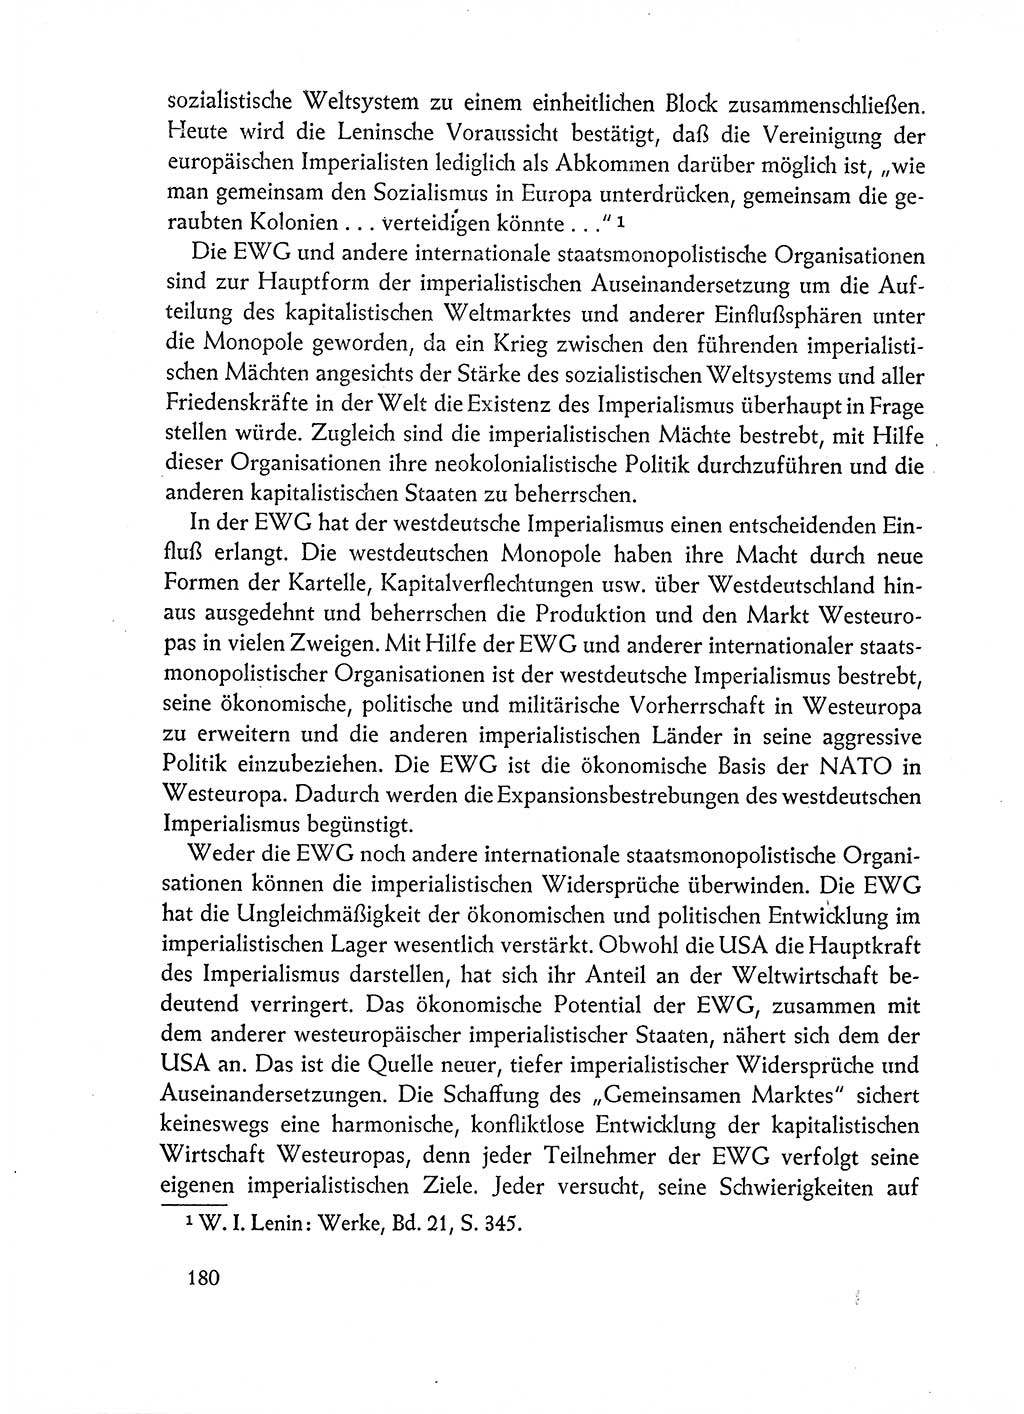 Dokumente der Sozialistischen Einheitspartei Deutschlands (SED) [Deutsche Demokratische Republik (DDR)] 1962-1963, Seite 180 (Dok. SED DDR 1962-1963, S. 180)